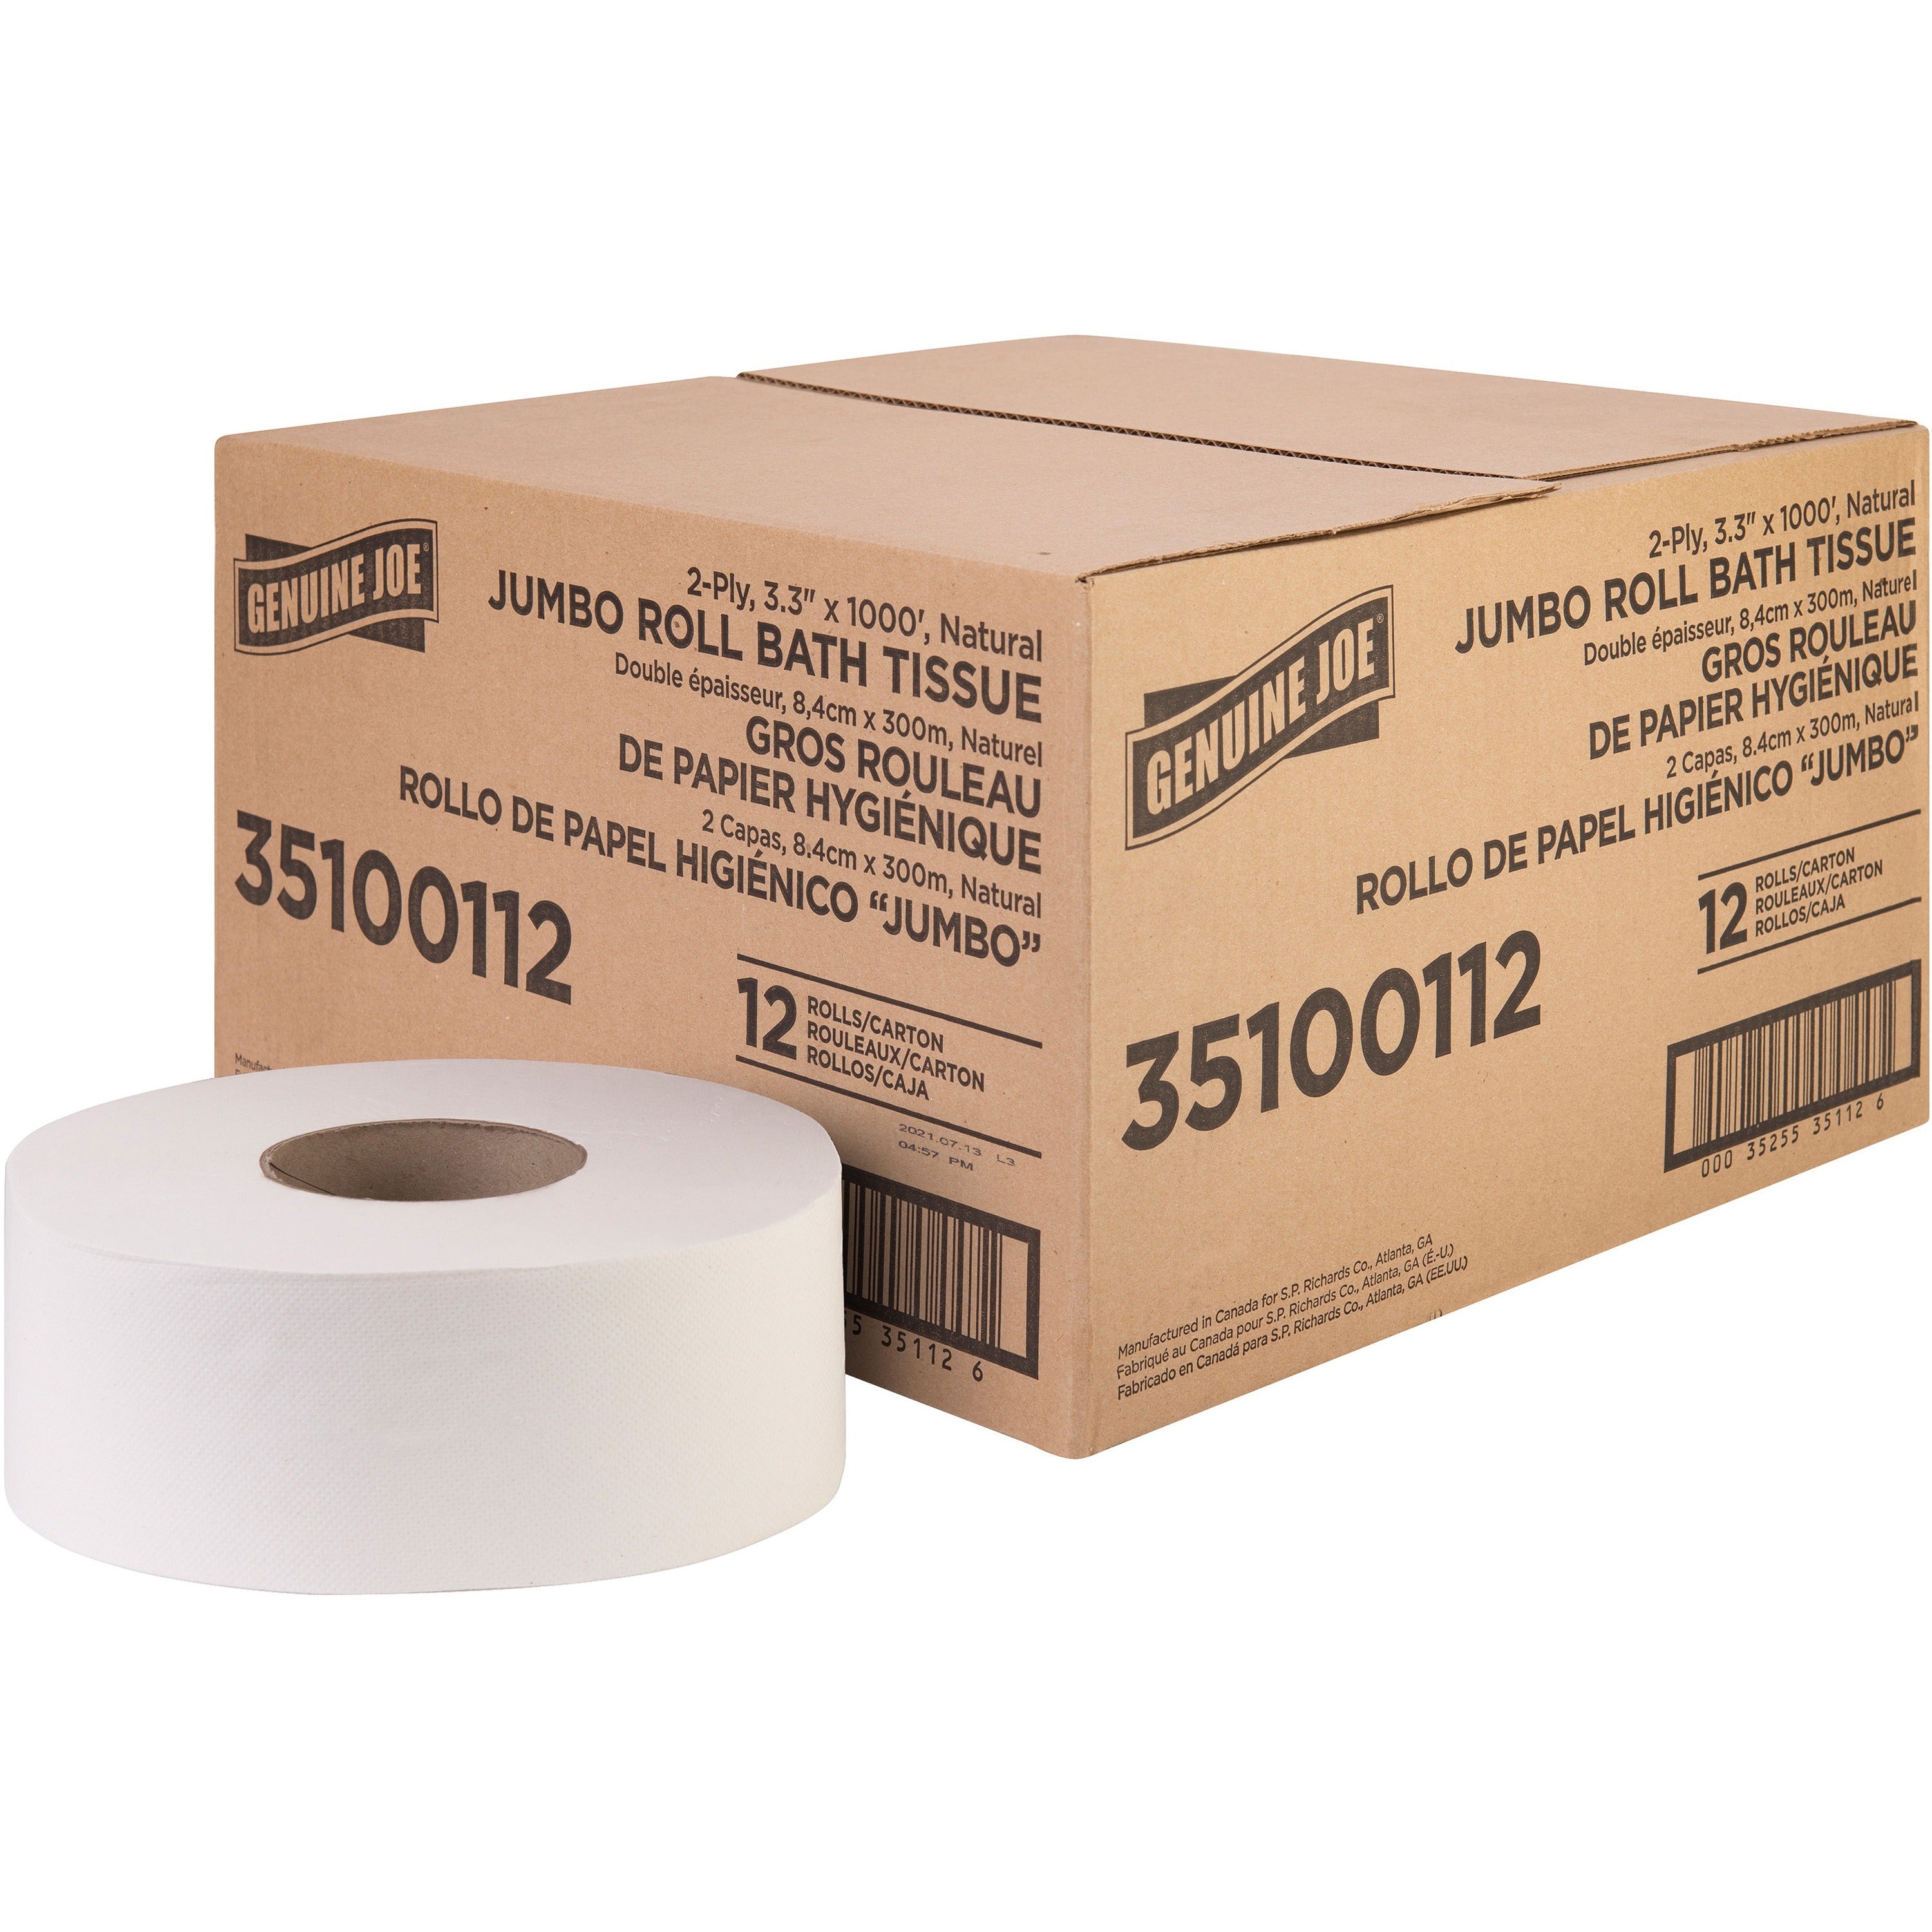 genuine-joe-jumbo-jr-dispenser-bath-tissue-roll-2-ply-330-x-1000-ft-888-roll-diameter-white-fiber-sewer-safe-septic-safe-for-bathroom-12-carton_gjo35100112 - 1